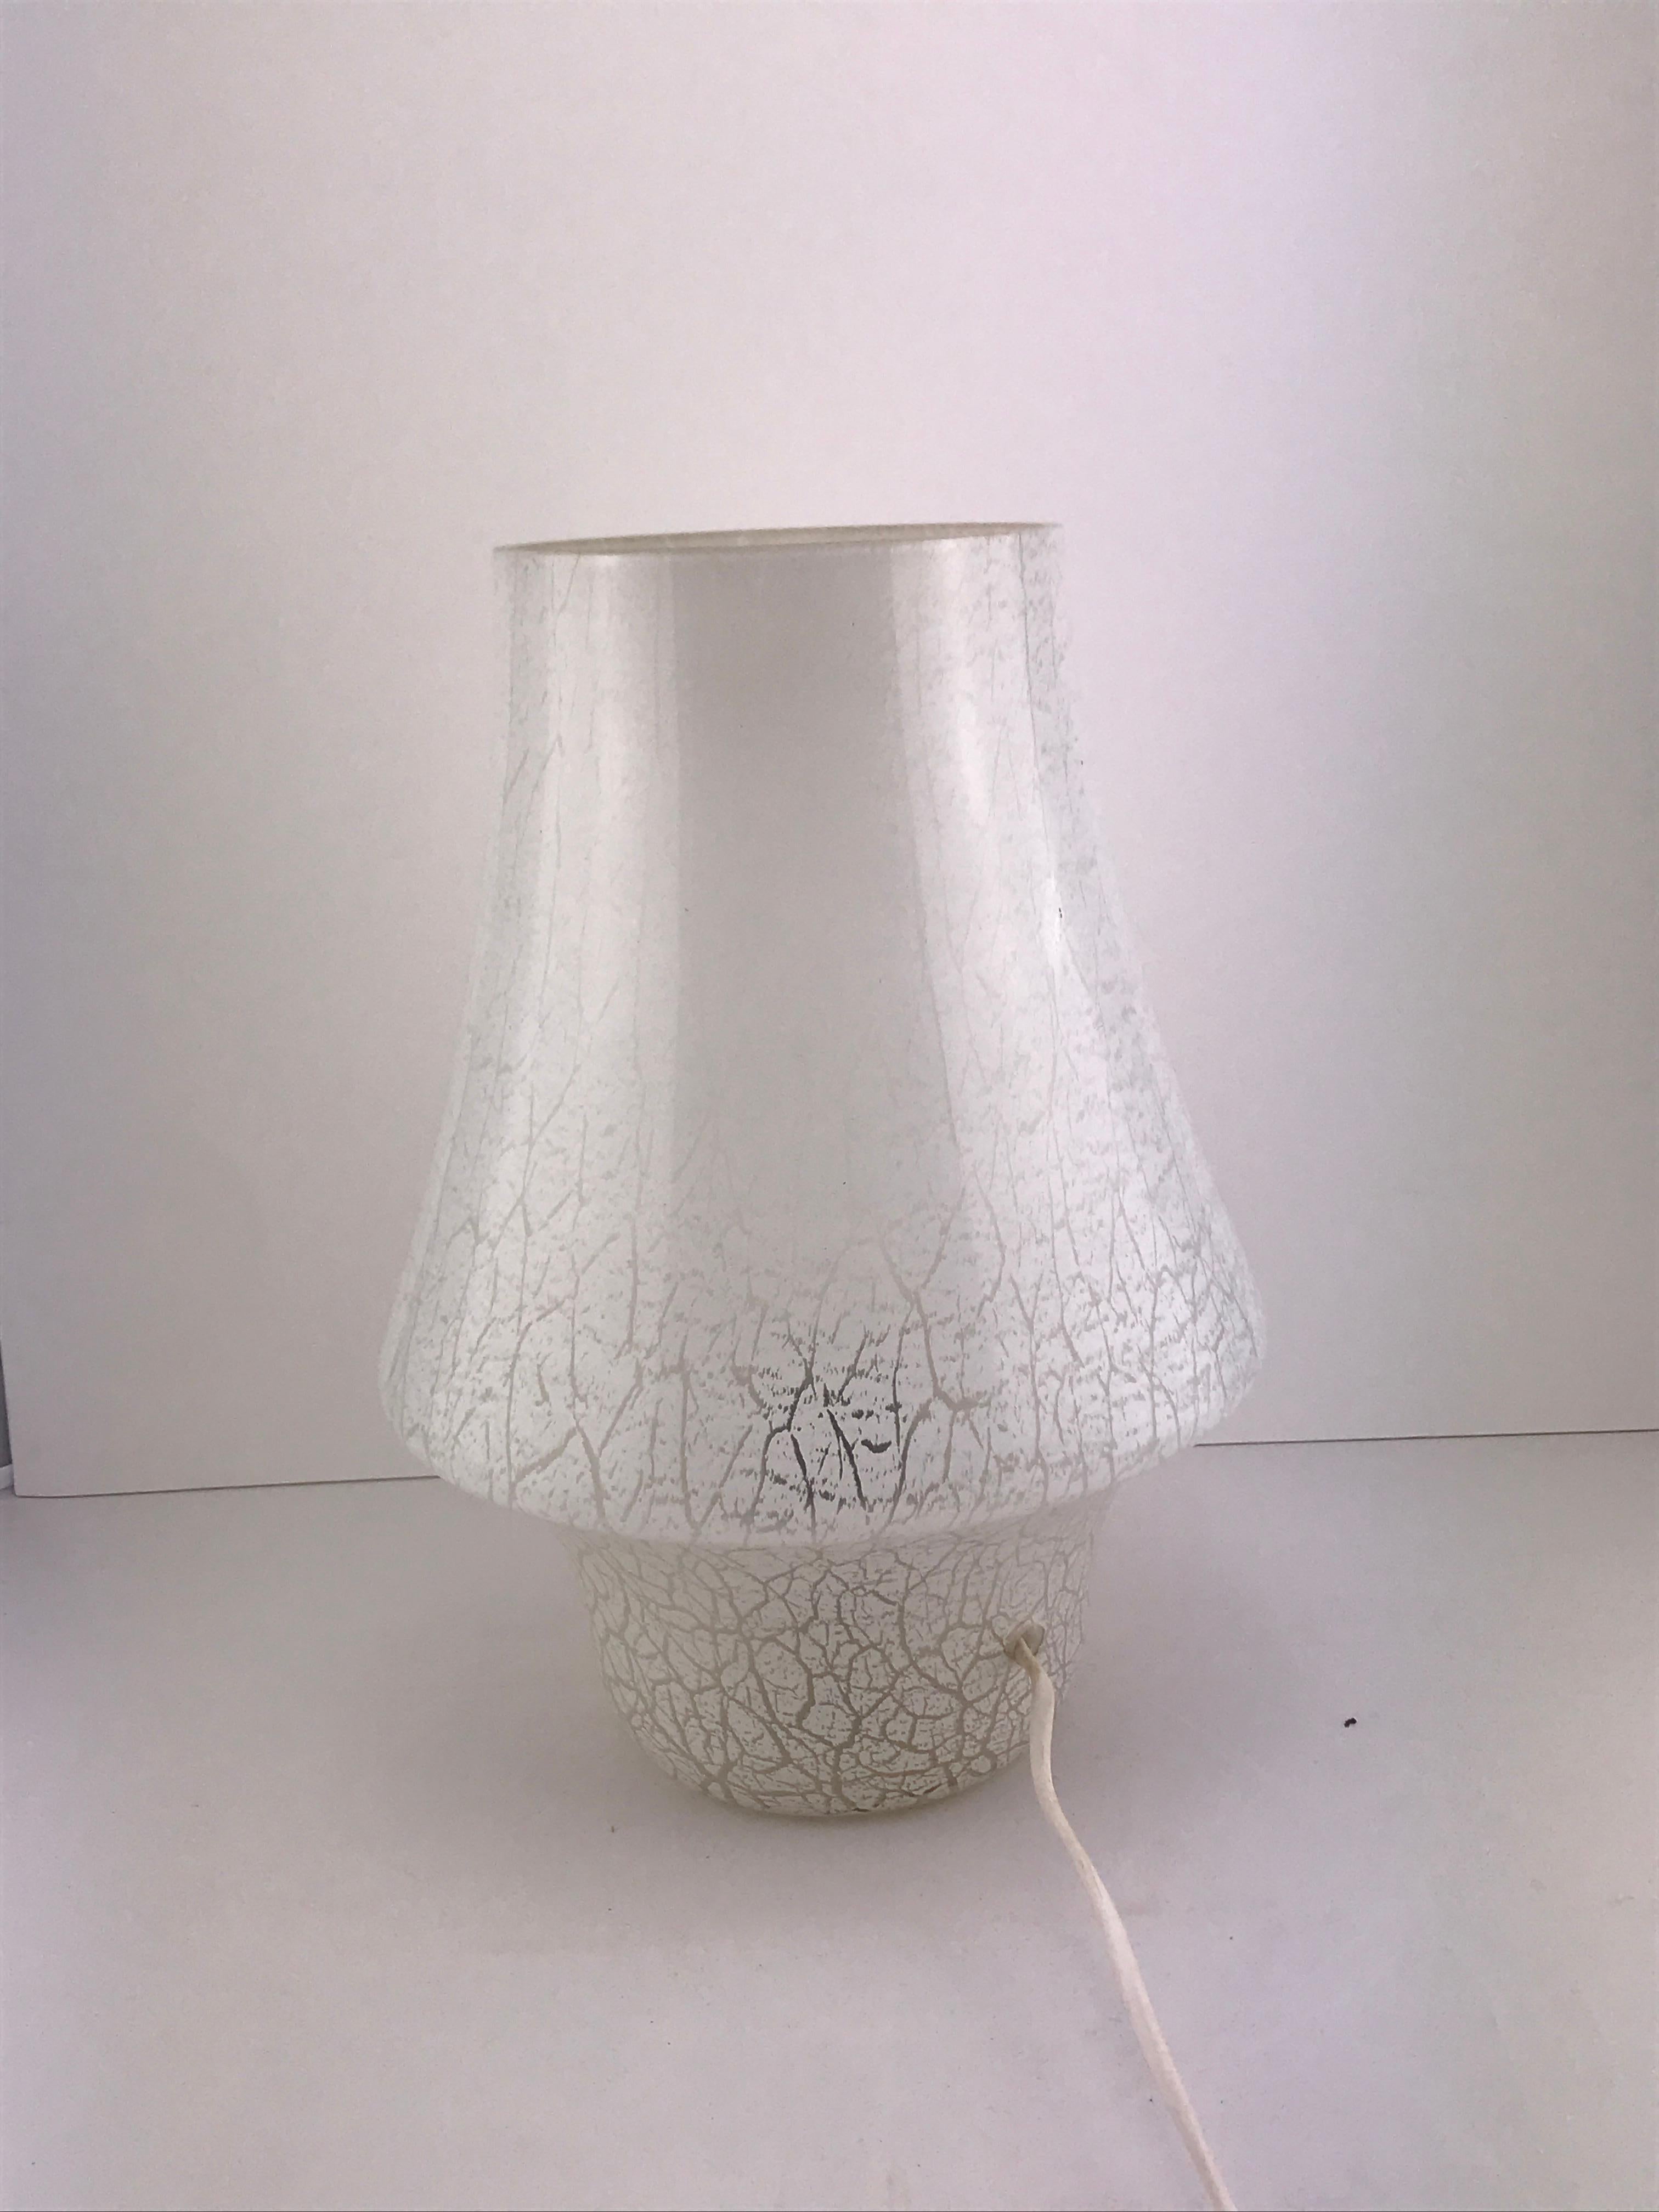 Italienische Pilzlampe aus Muranoglas, 1960er Jahre.
Guter Zustand in Anbetracht des Alters das weiße Glas ist immer noch sehr schön und das Licht die kommen aus ist schön und sanft nicht invasiv überhaupt und macht diese Lampe perfekt für ein